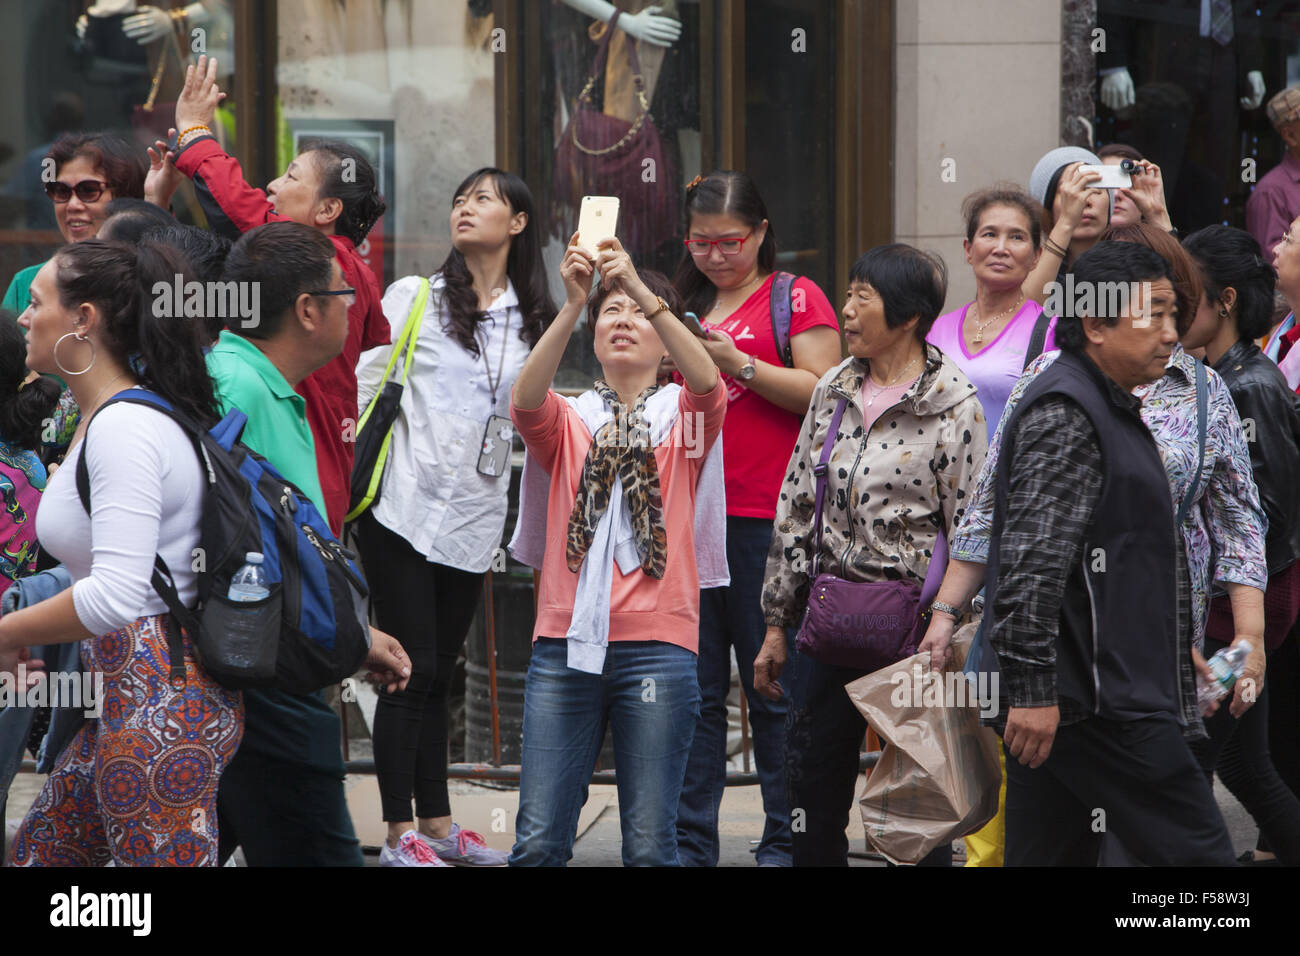 Constsntly touristes prenez des photos sur leurs téléphones à Times Square, New York City. Banque D'Images